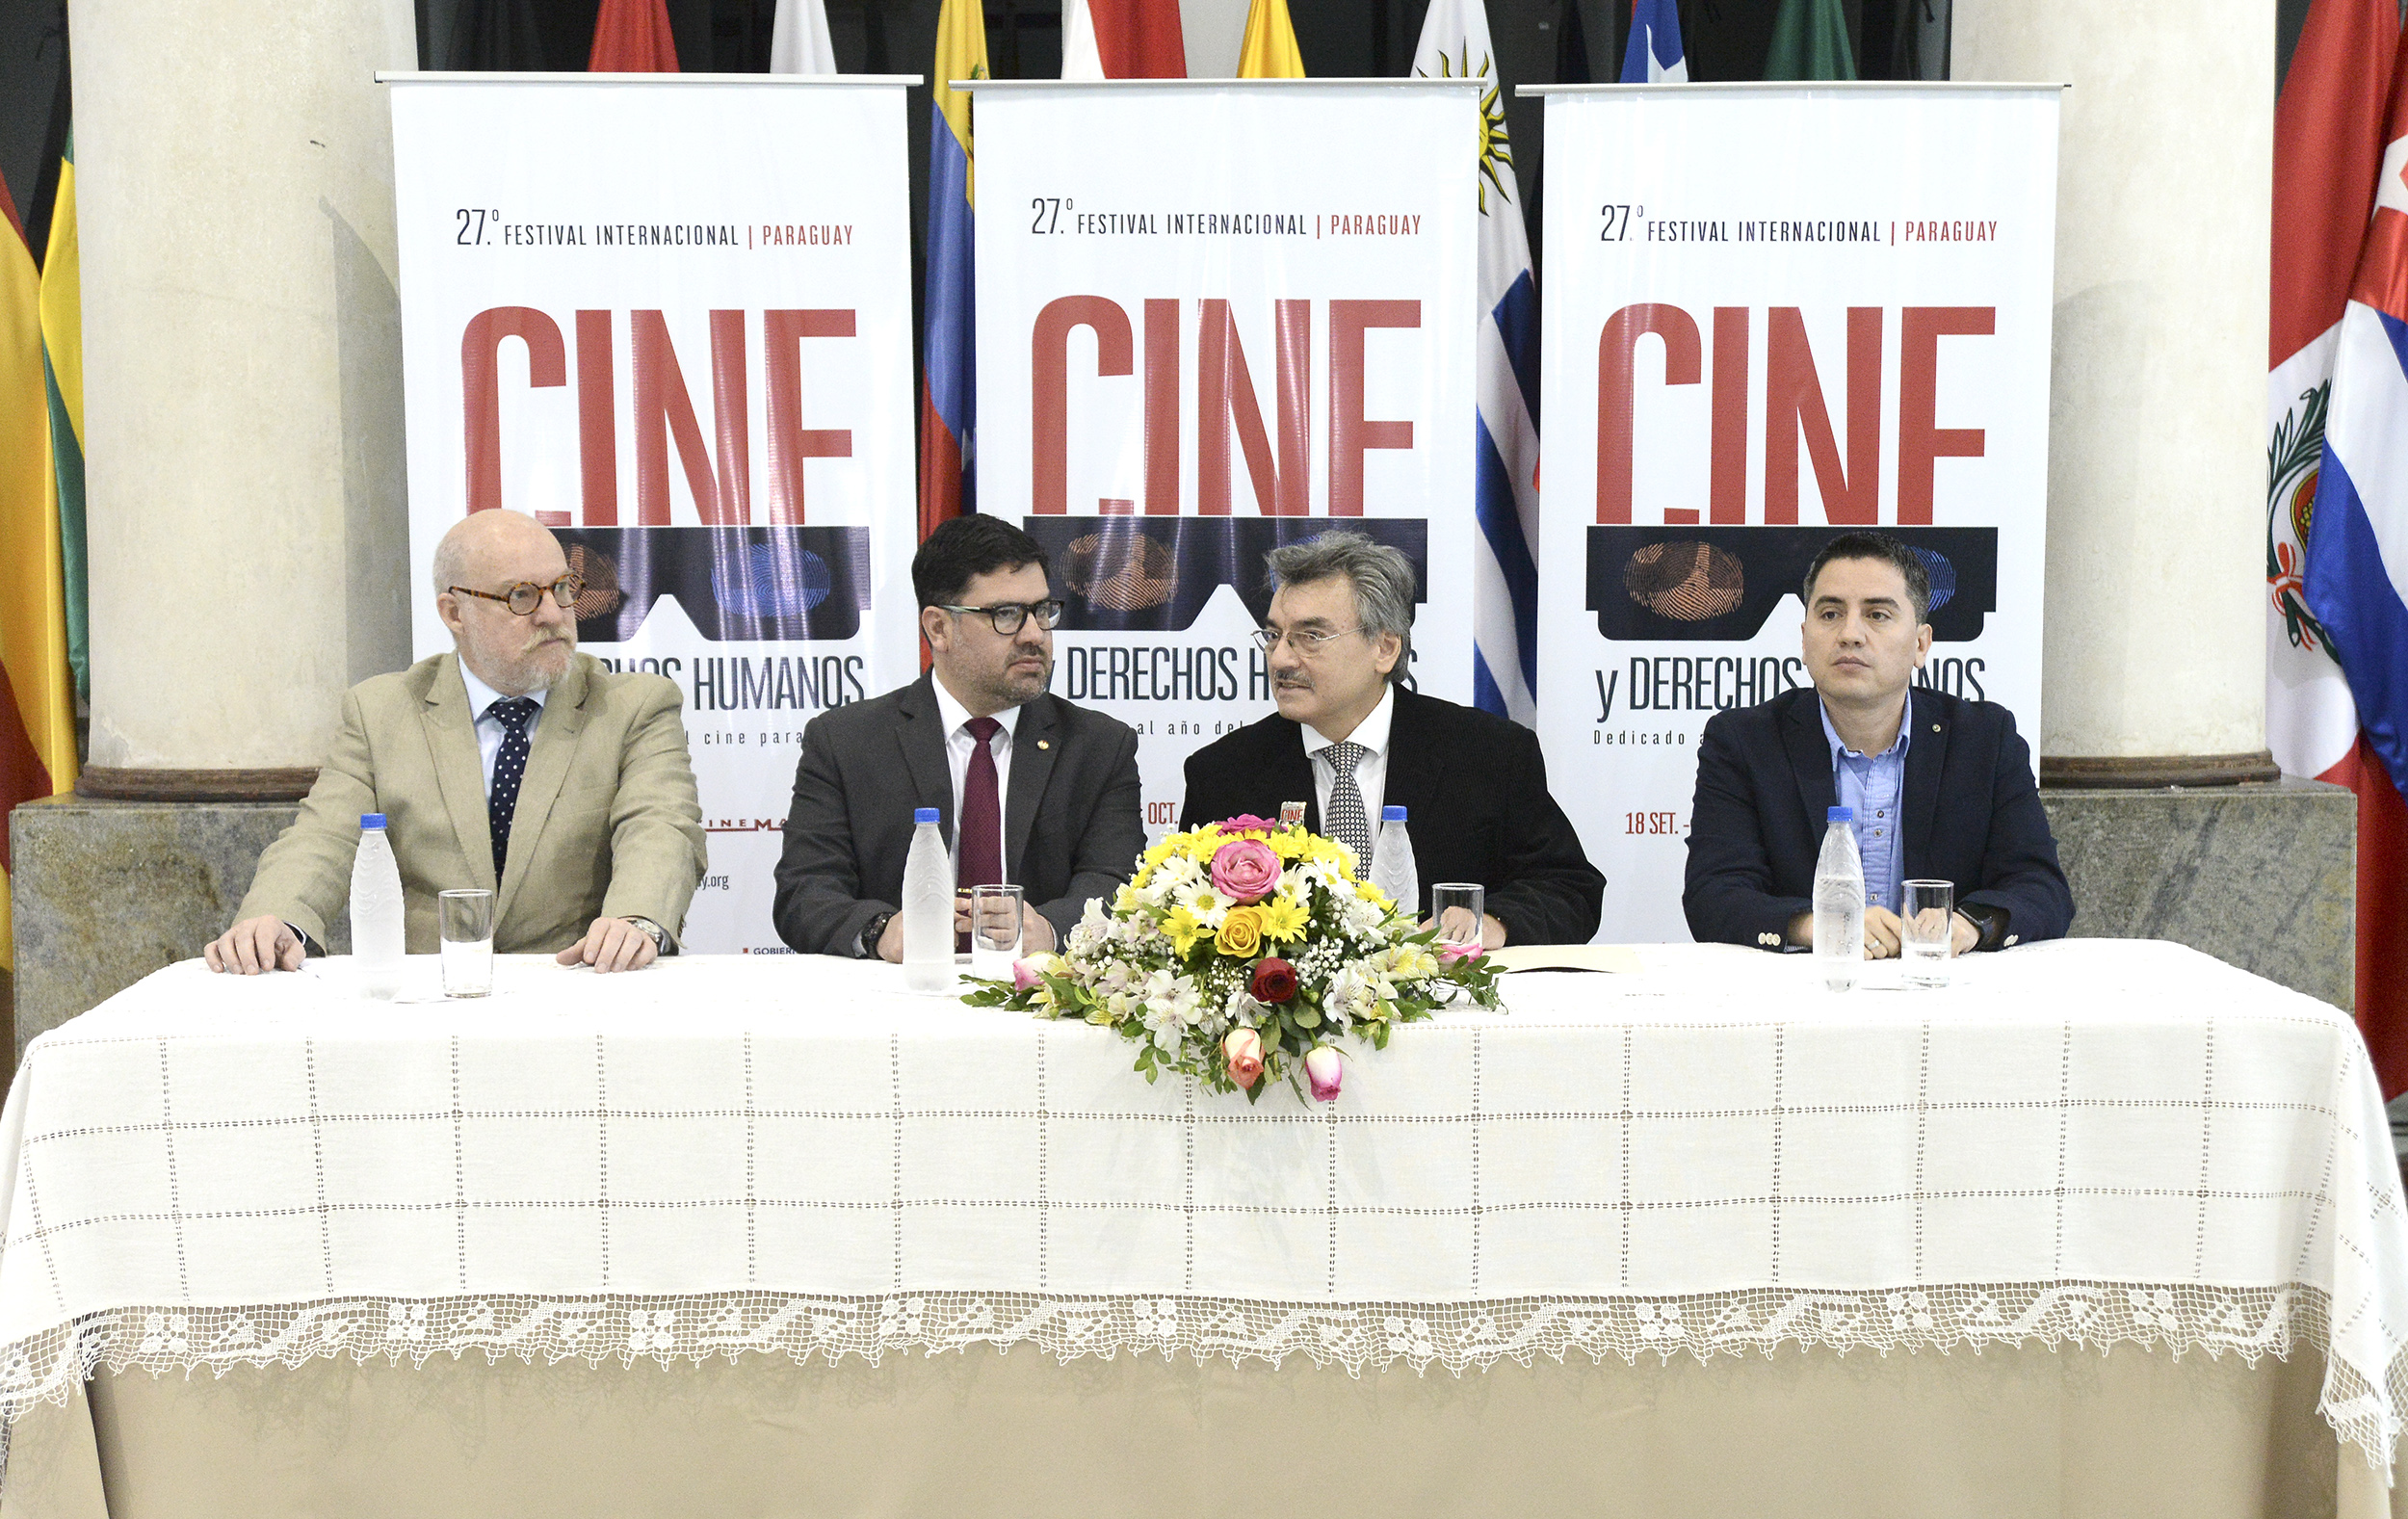 Lanzamiento del 27° Festival Internacional Paraguay “Cine y Derechos Humanos”